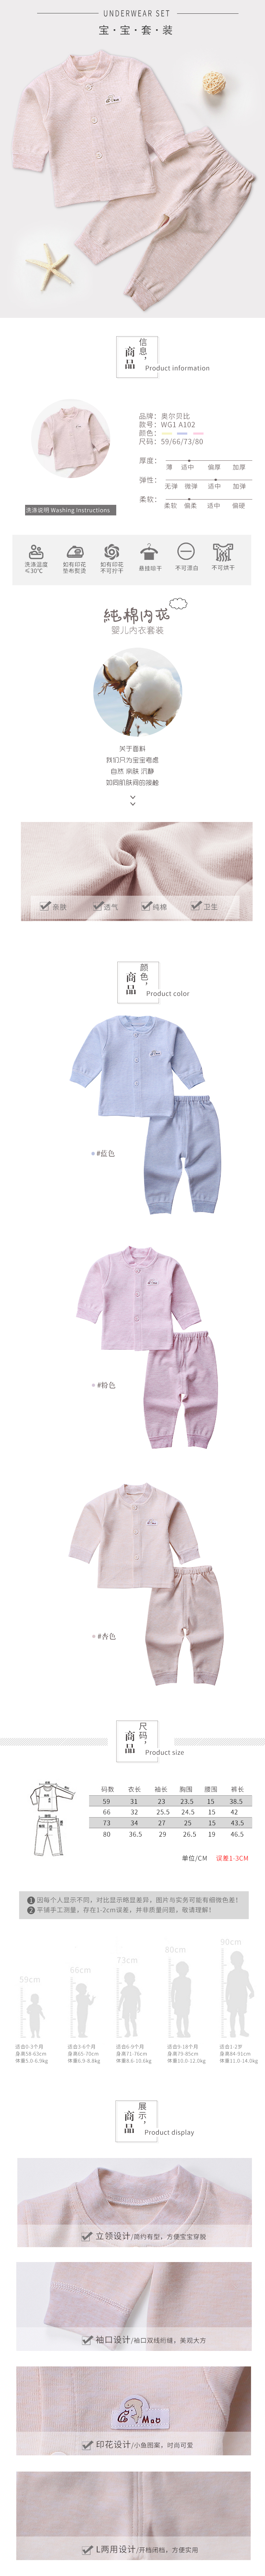 淘宝美工小水奥尔贝比新生儿衣服0-3月纯棉婴儿衣服儿童内衣婴儿系带和服套装作品